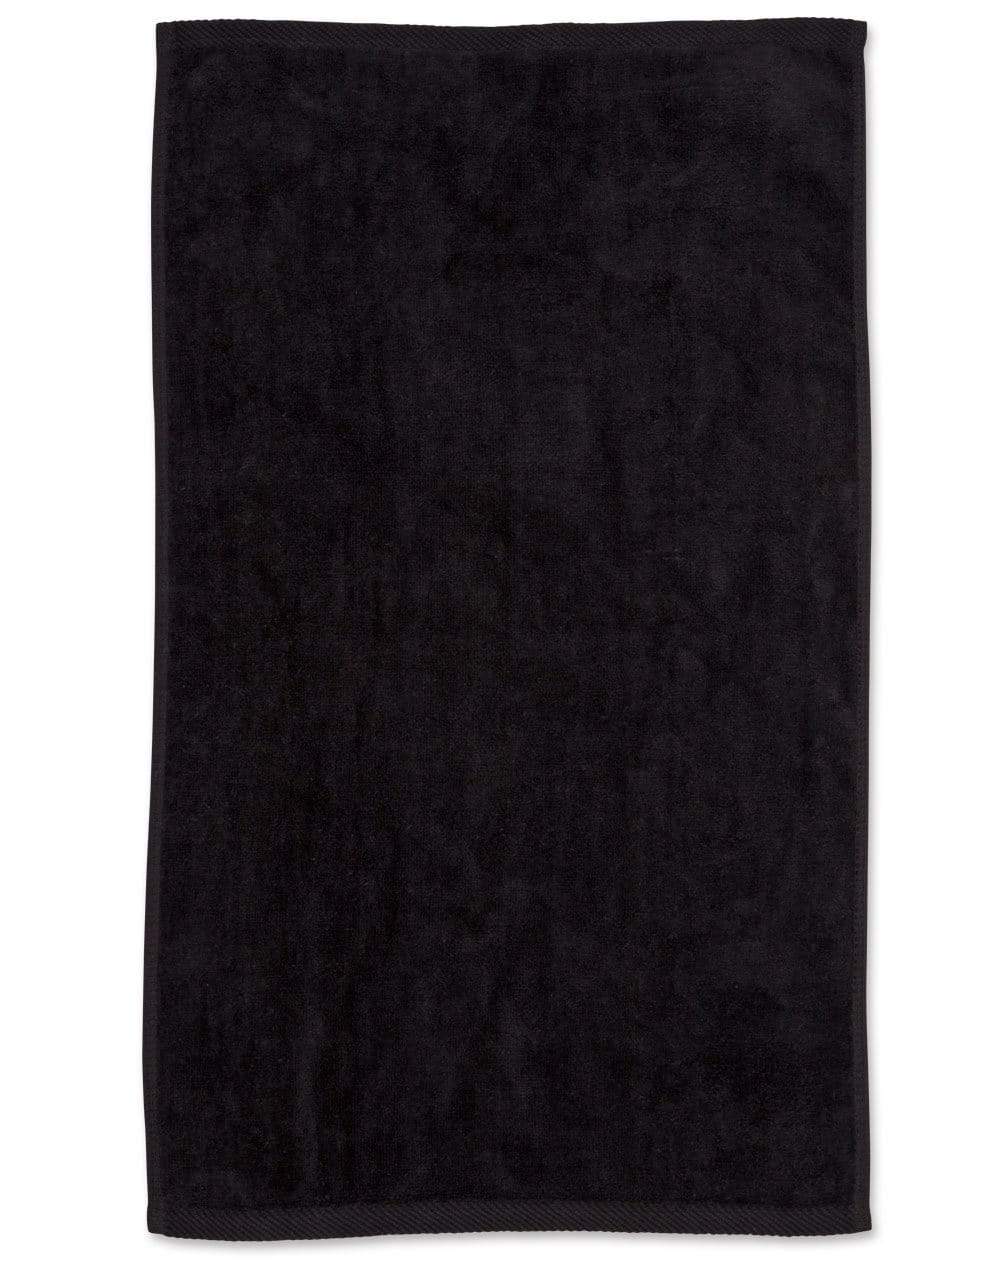 Golf Towel TW01 Work Wear Australian Industrial Wear 38cm x 65cm Black 